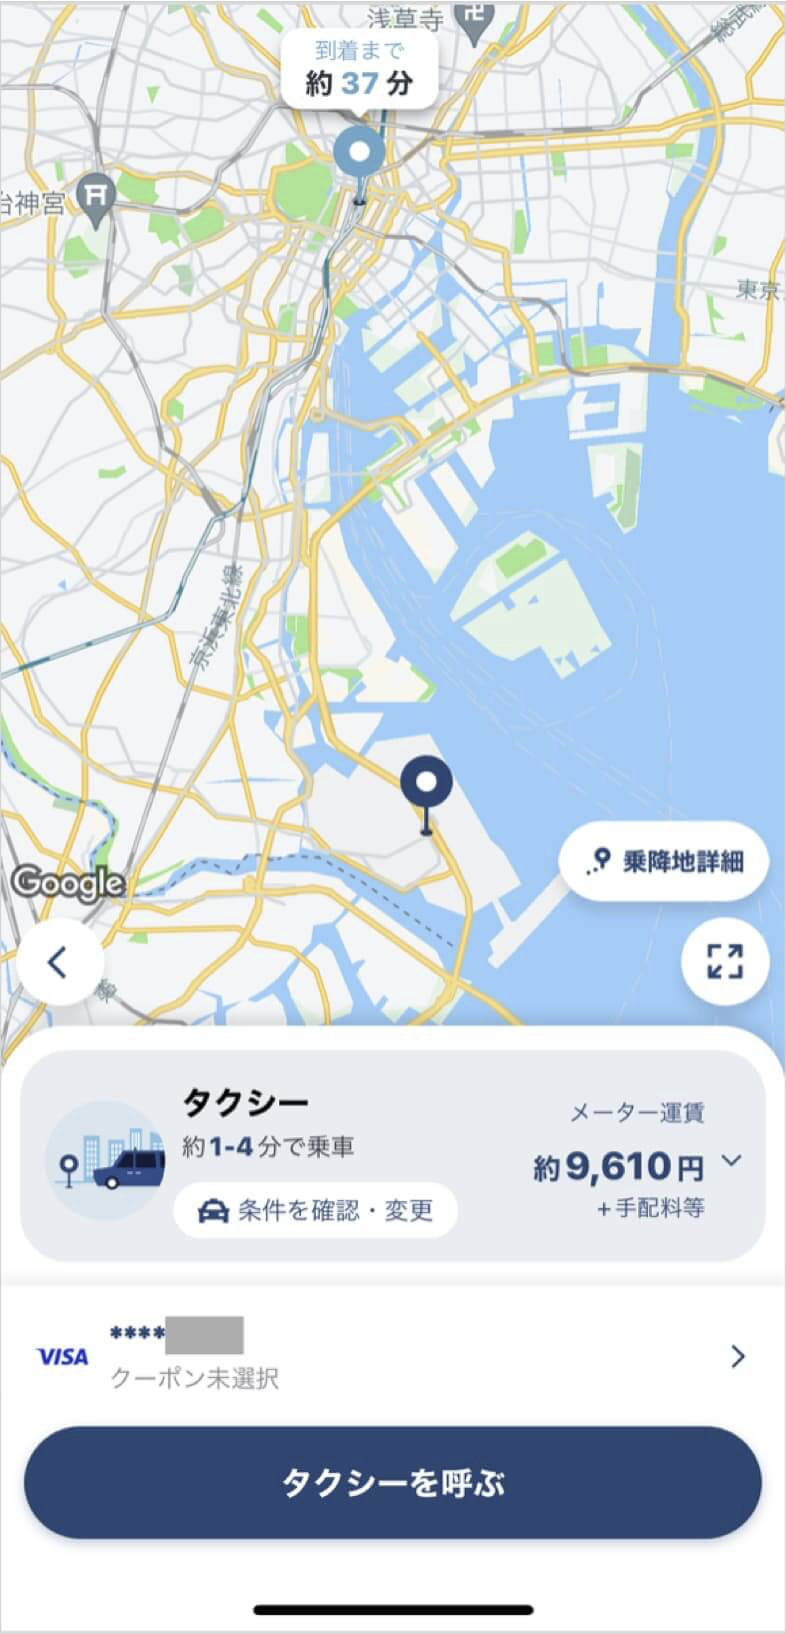 羽田空港から東京駅までのタクシー料金・所要時間まとめ